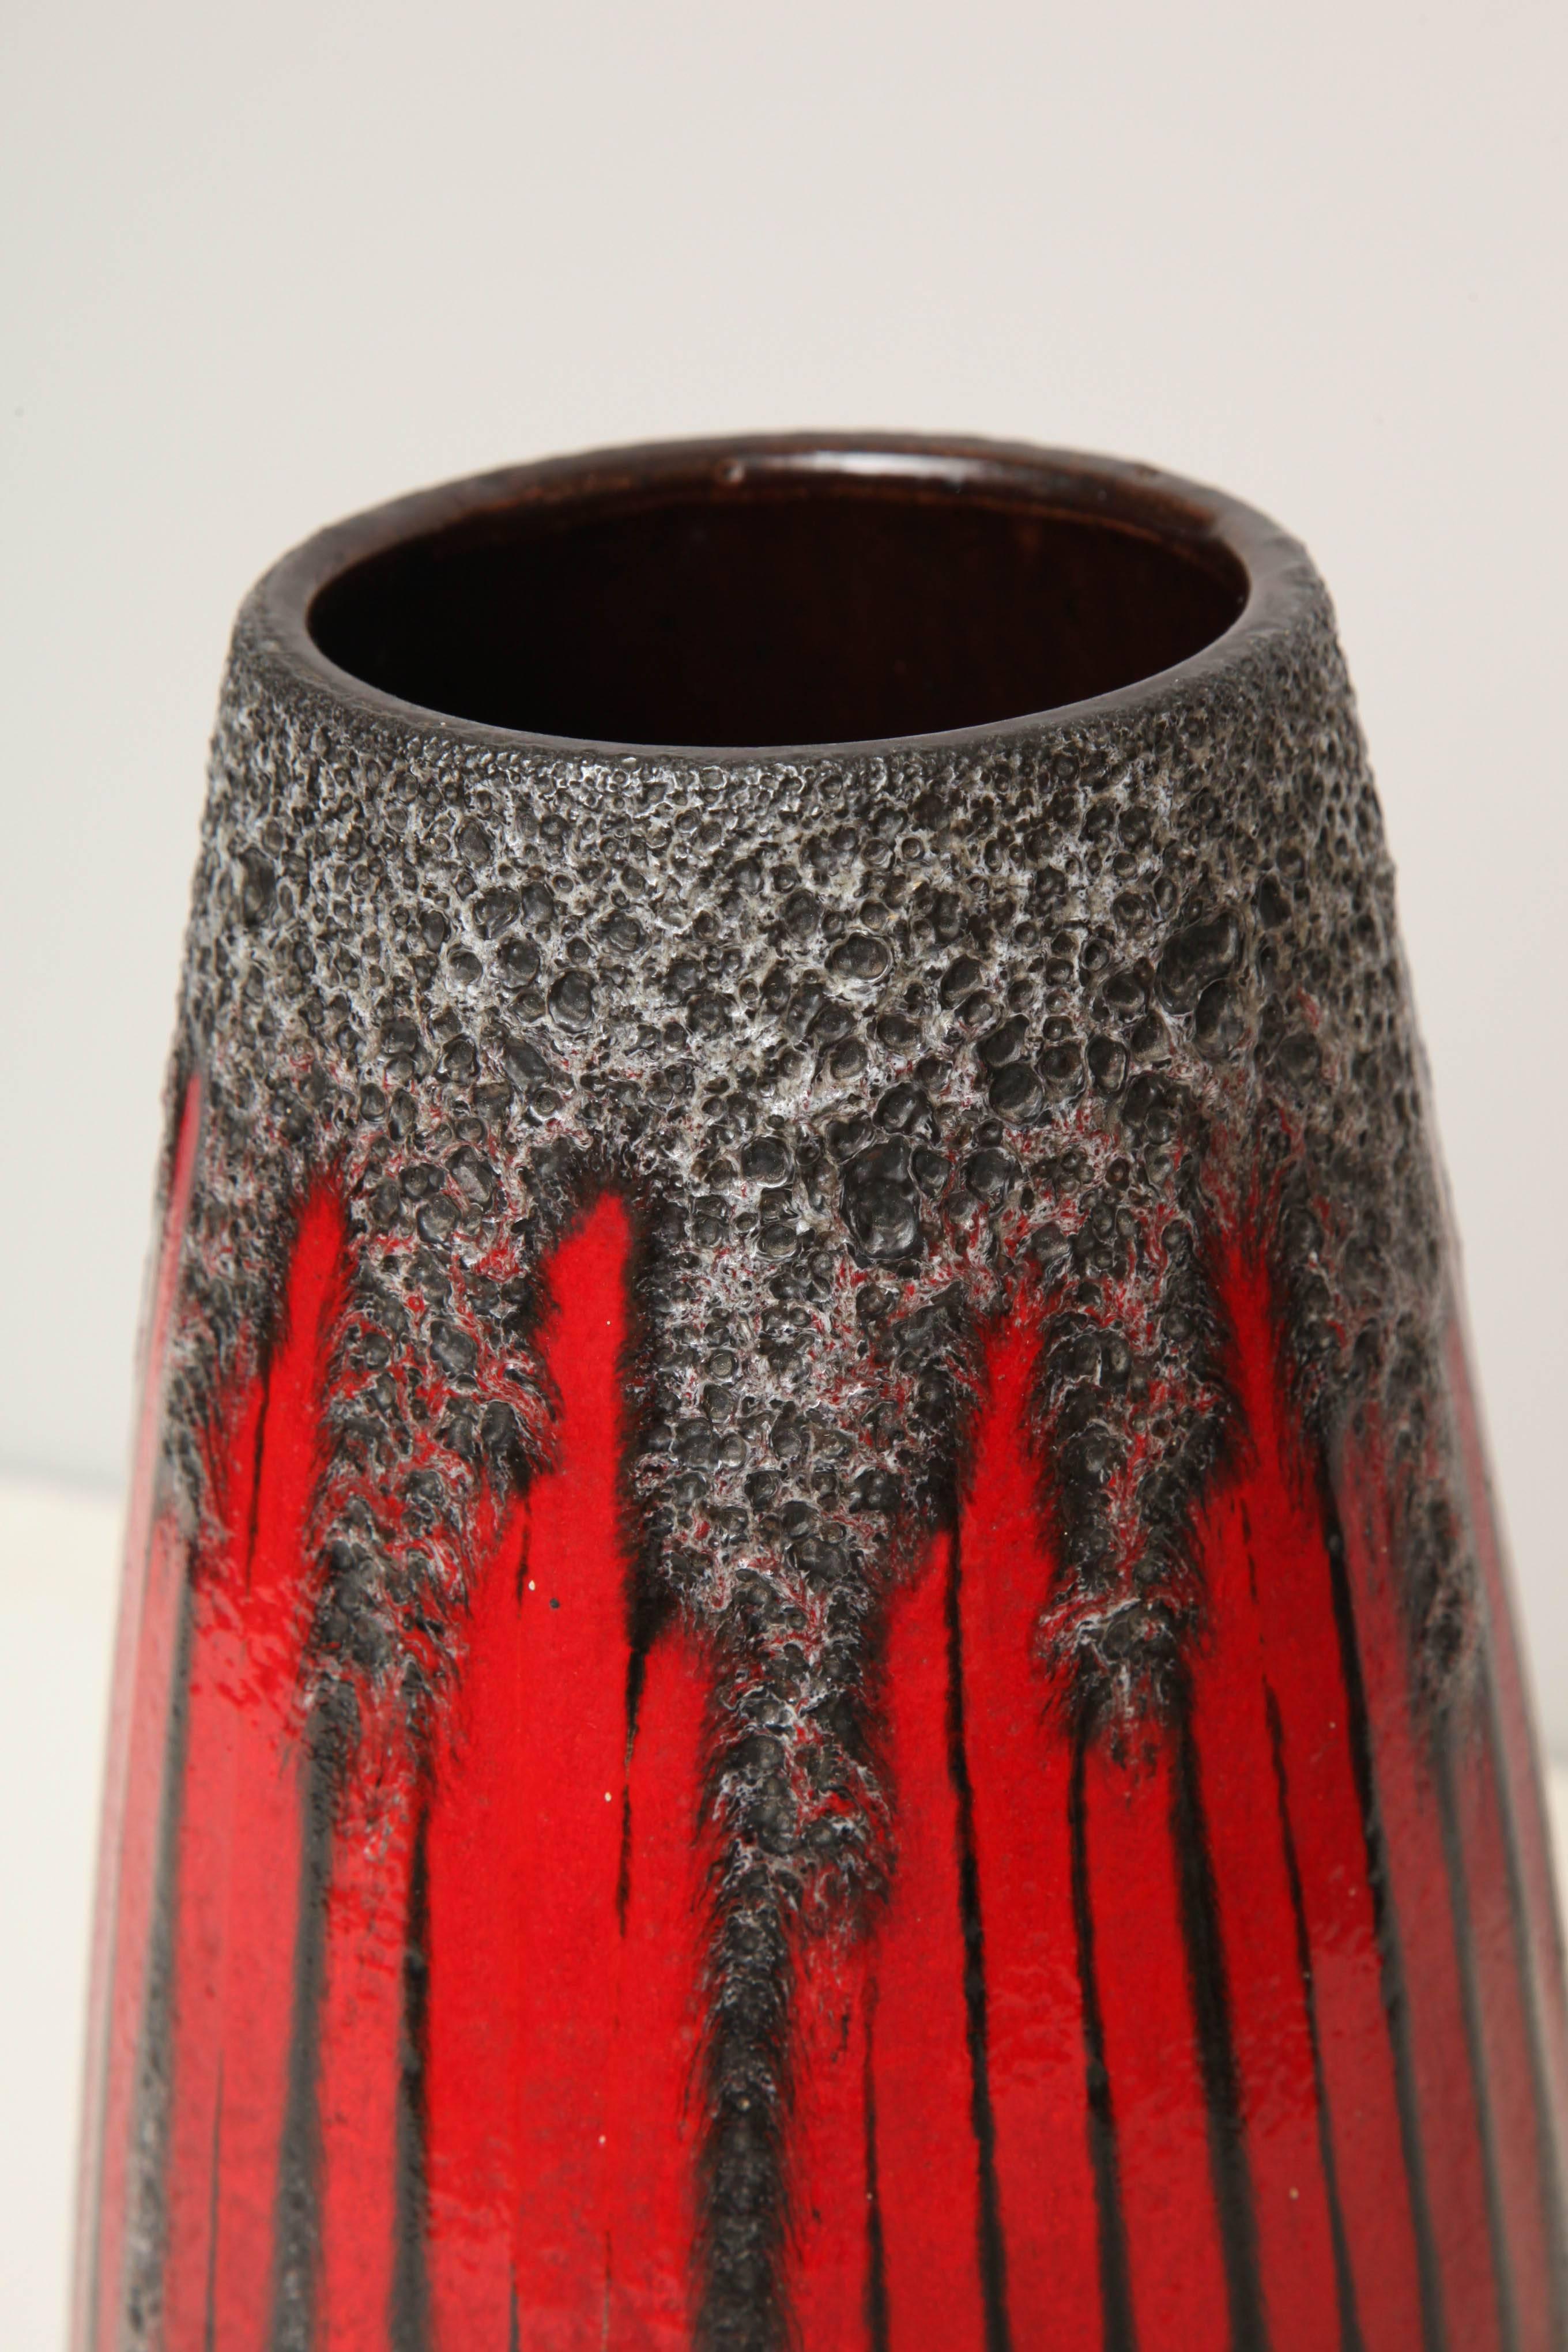 Mid-20th Century Art Pottery Vase